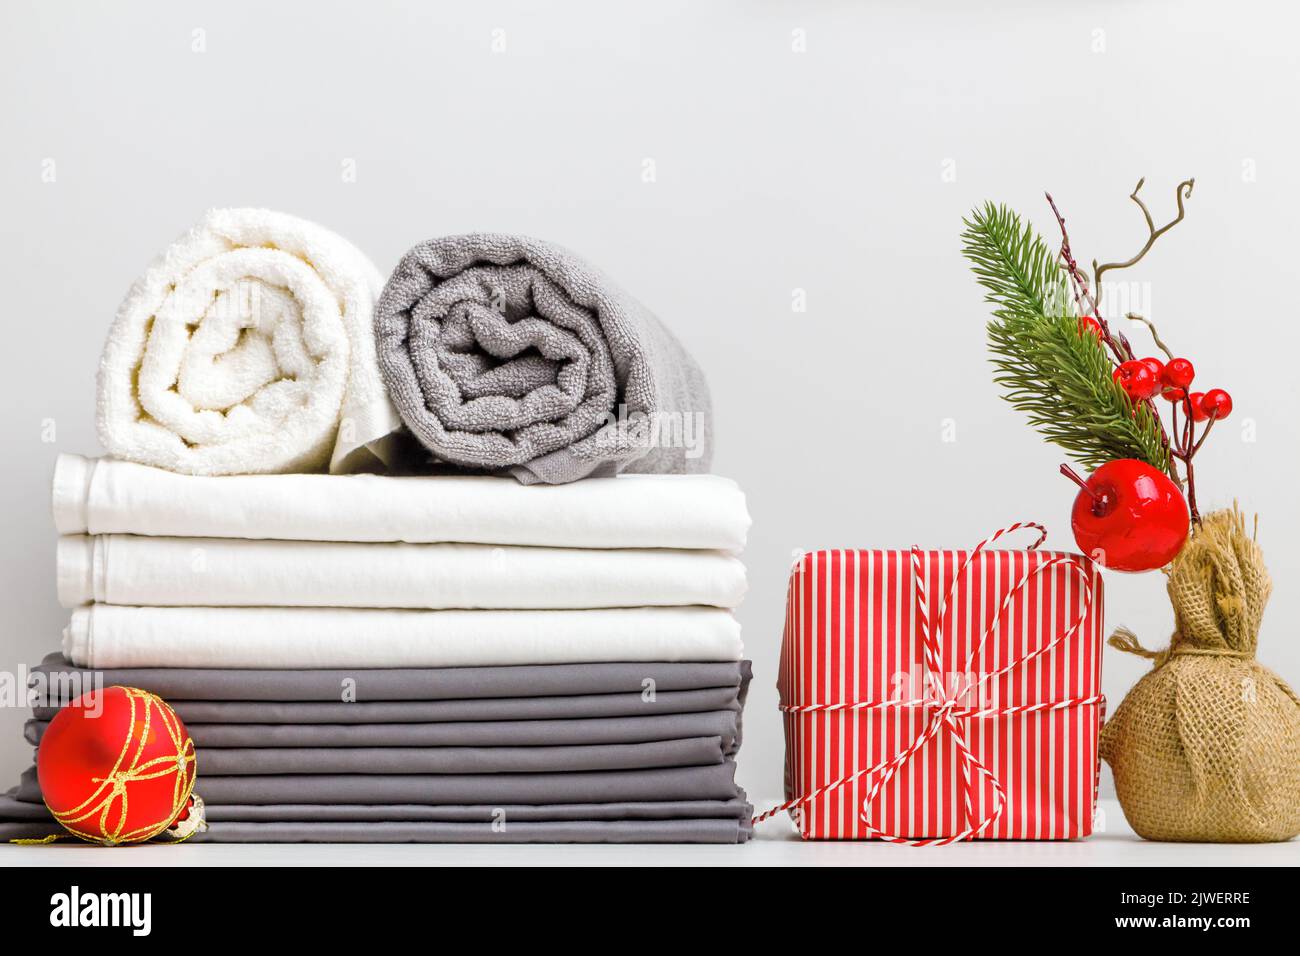 Stapel Bettwäsche, Bettwäsche und gefaltete Handtuchrollen auf einem Tisch mit weihnachtlicher Dekoration Stockfoto